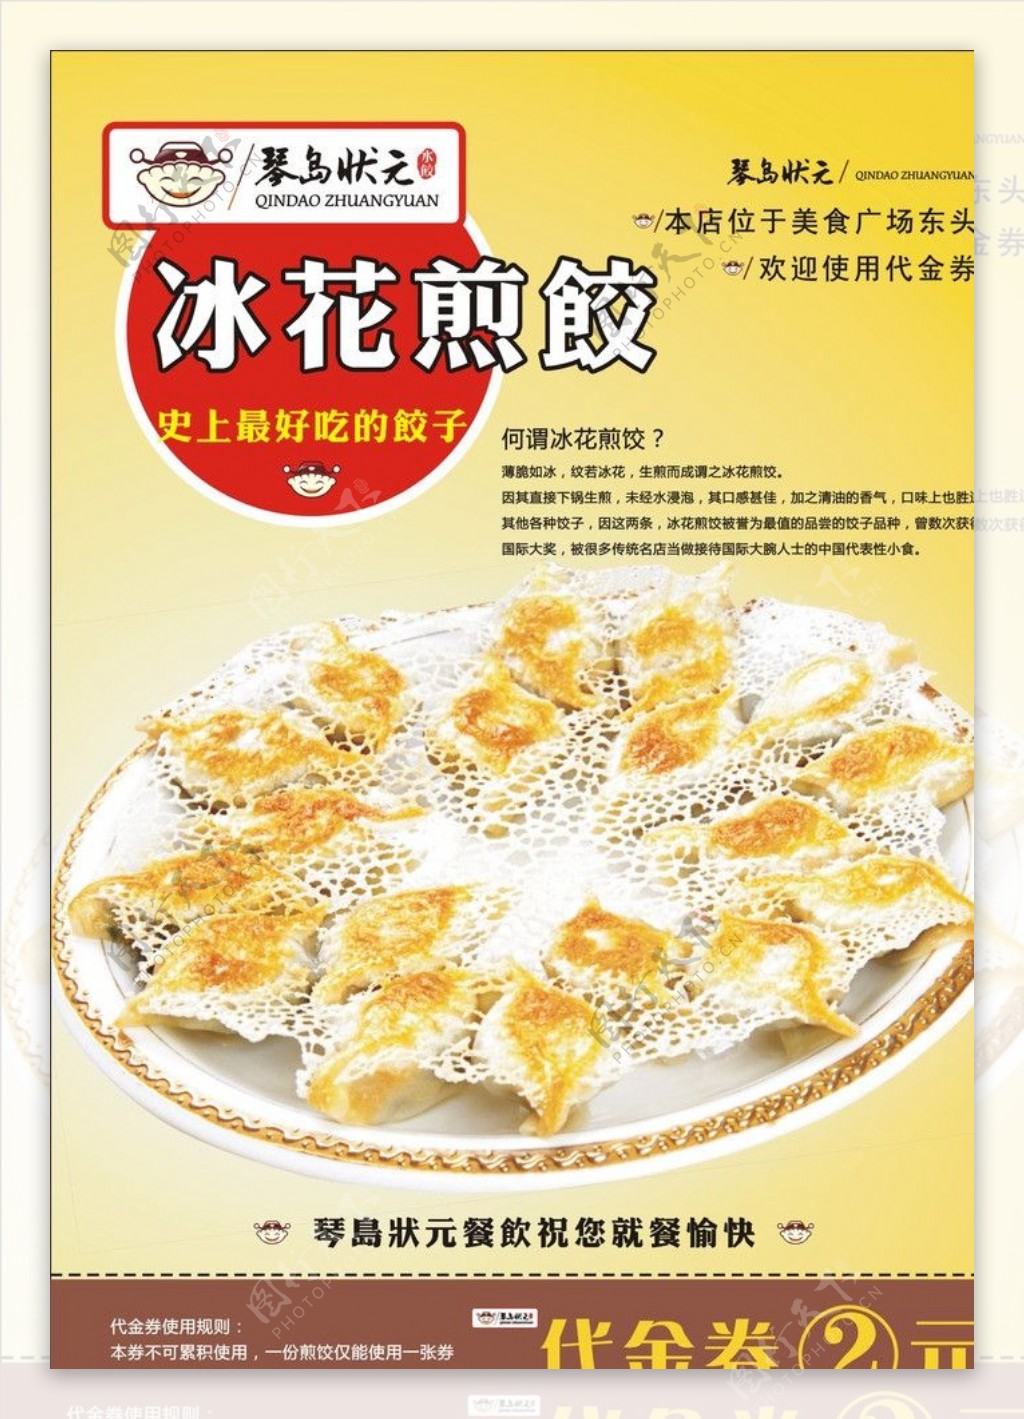 冰花煎饺 - 好吃佬 - 得意生活-武汉生活消费社区